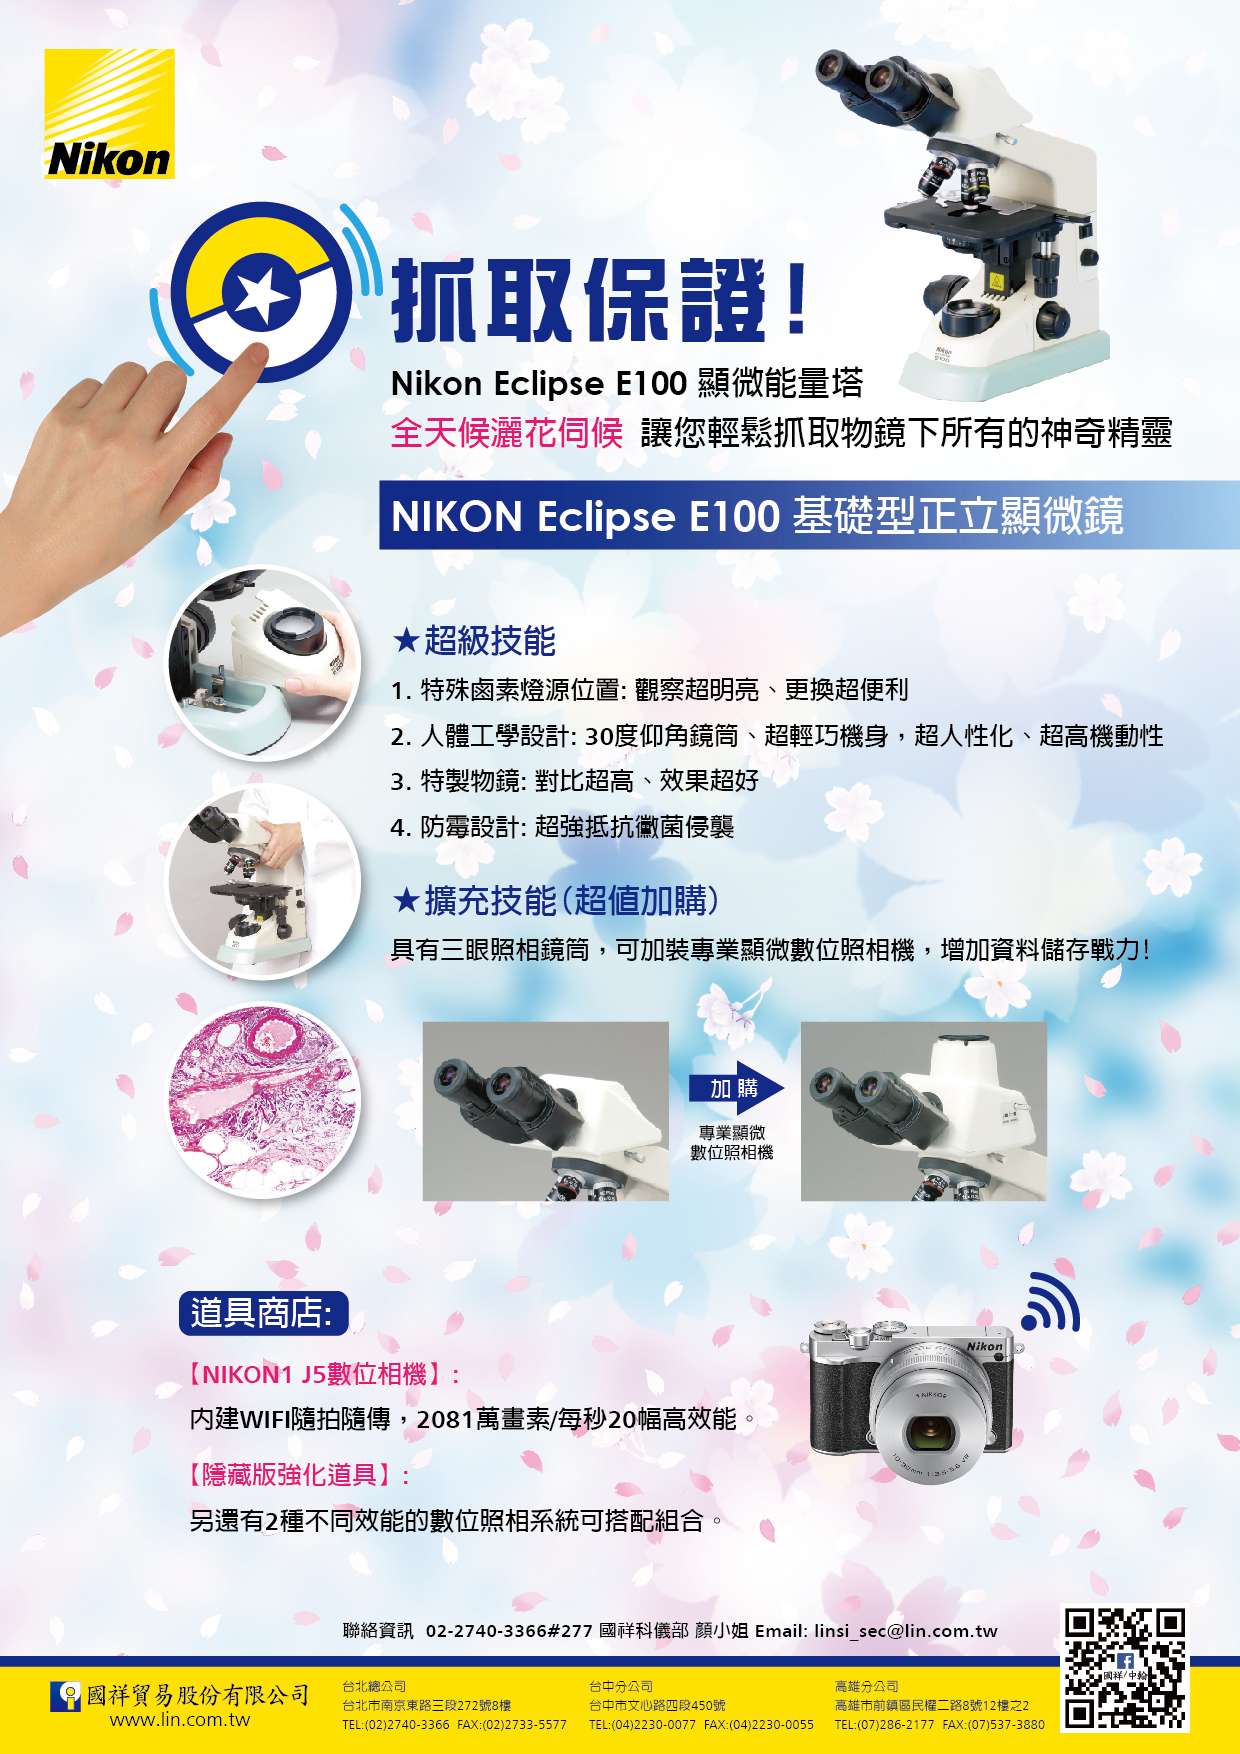 ☆全天候灑花伺候☆ Nikon Eclipse E100顯微能量塔 讓您輕鬆抓取物鏡下所有的神奇精靈